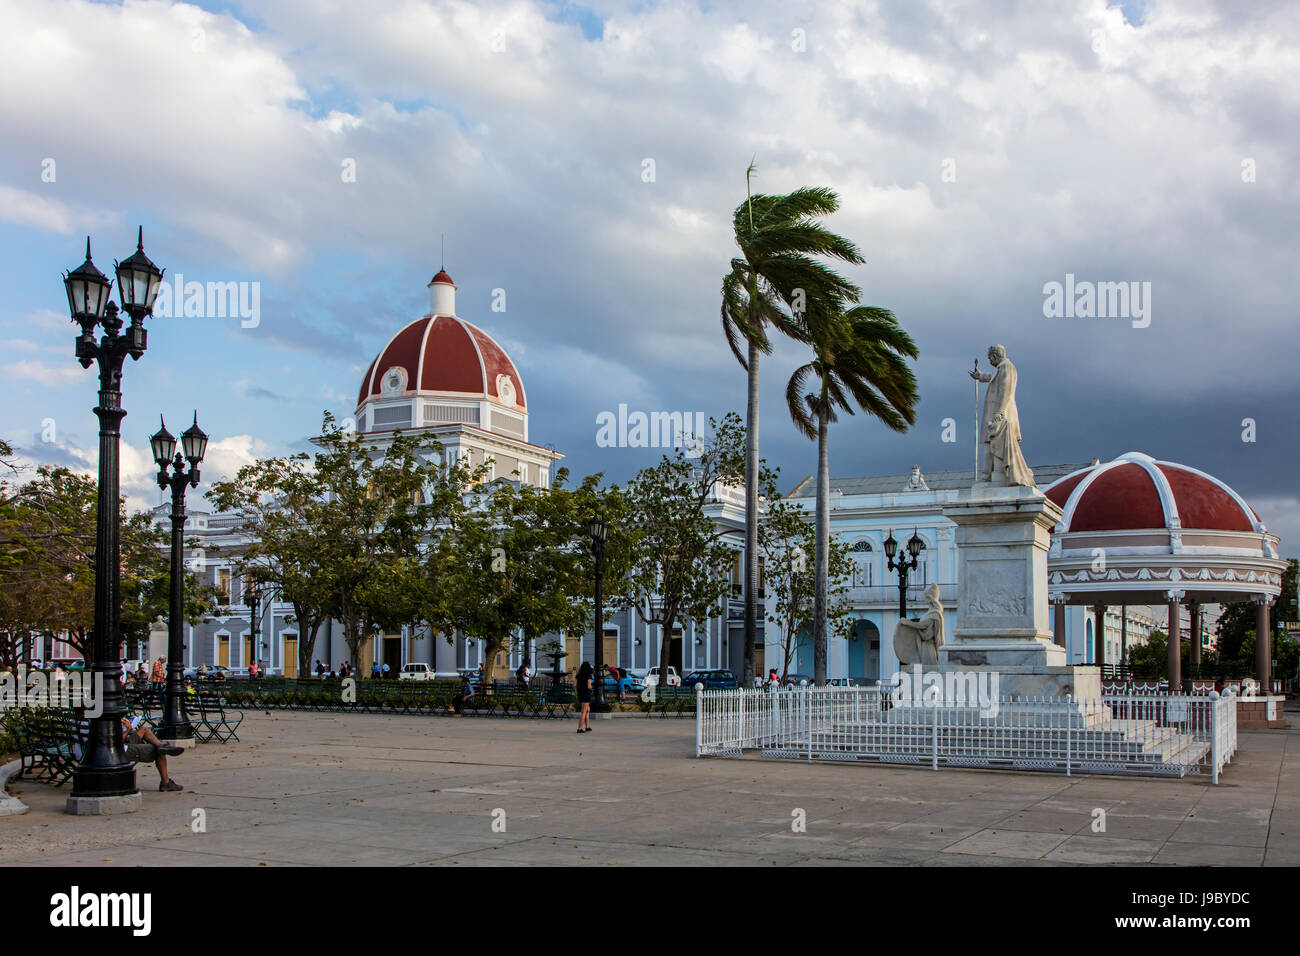 The PALACIO DE GOBIERNO or government palace is located on the PARQUE JOSE MARTI - CIENFUEGOS, CUBA Stock Photo